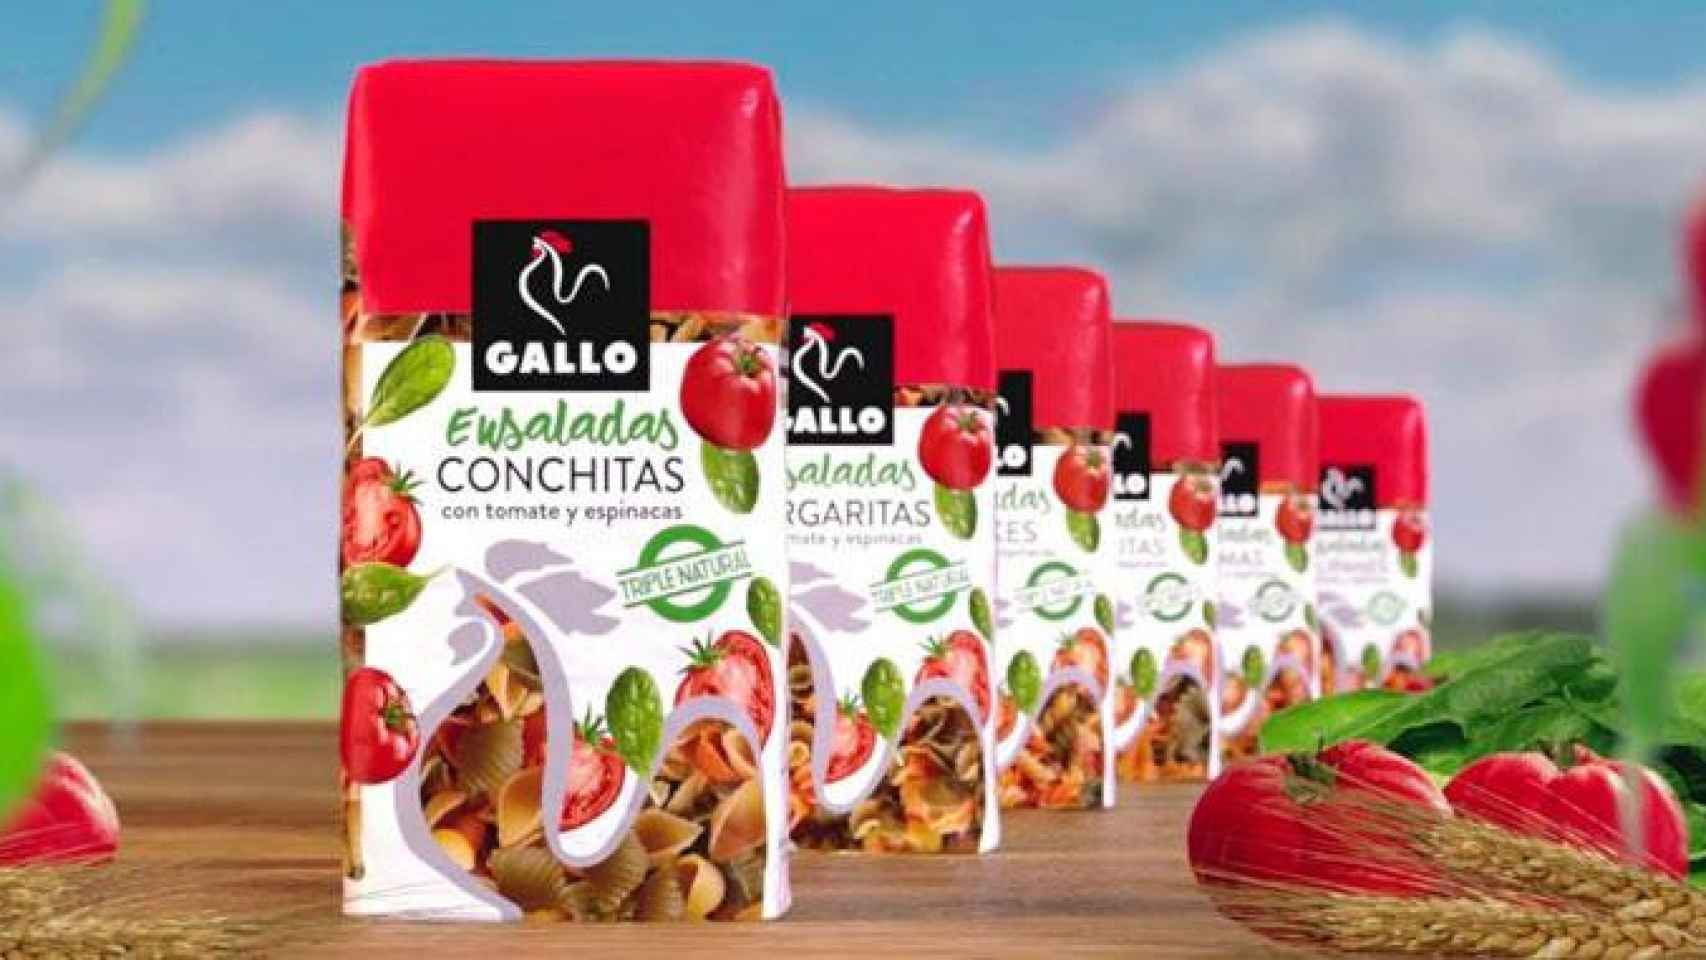 Imagen de diversos productos de Pastas Gallo / CG